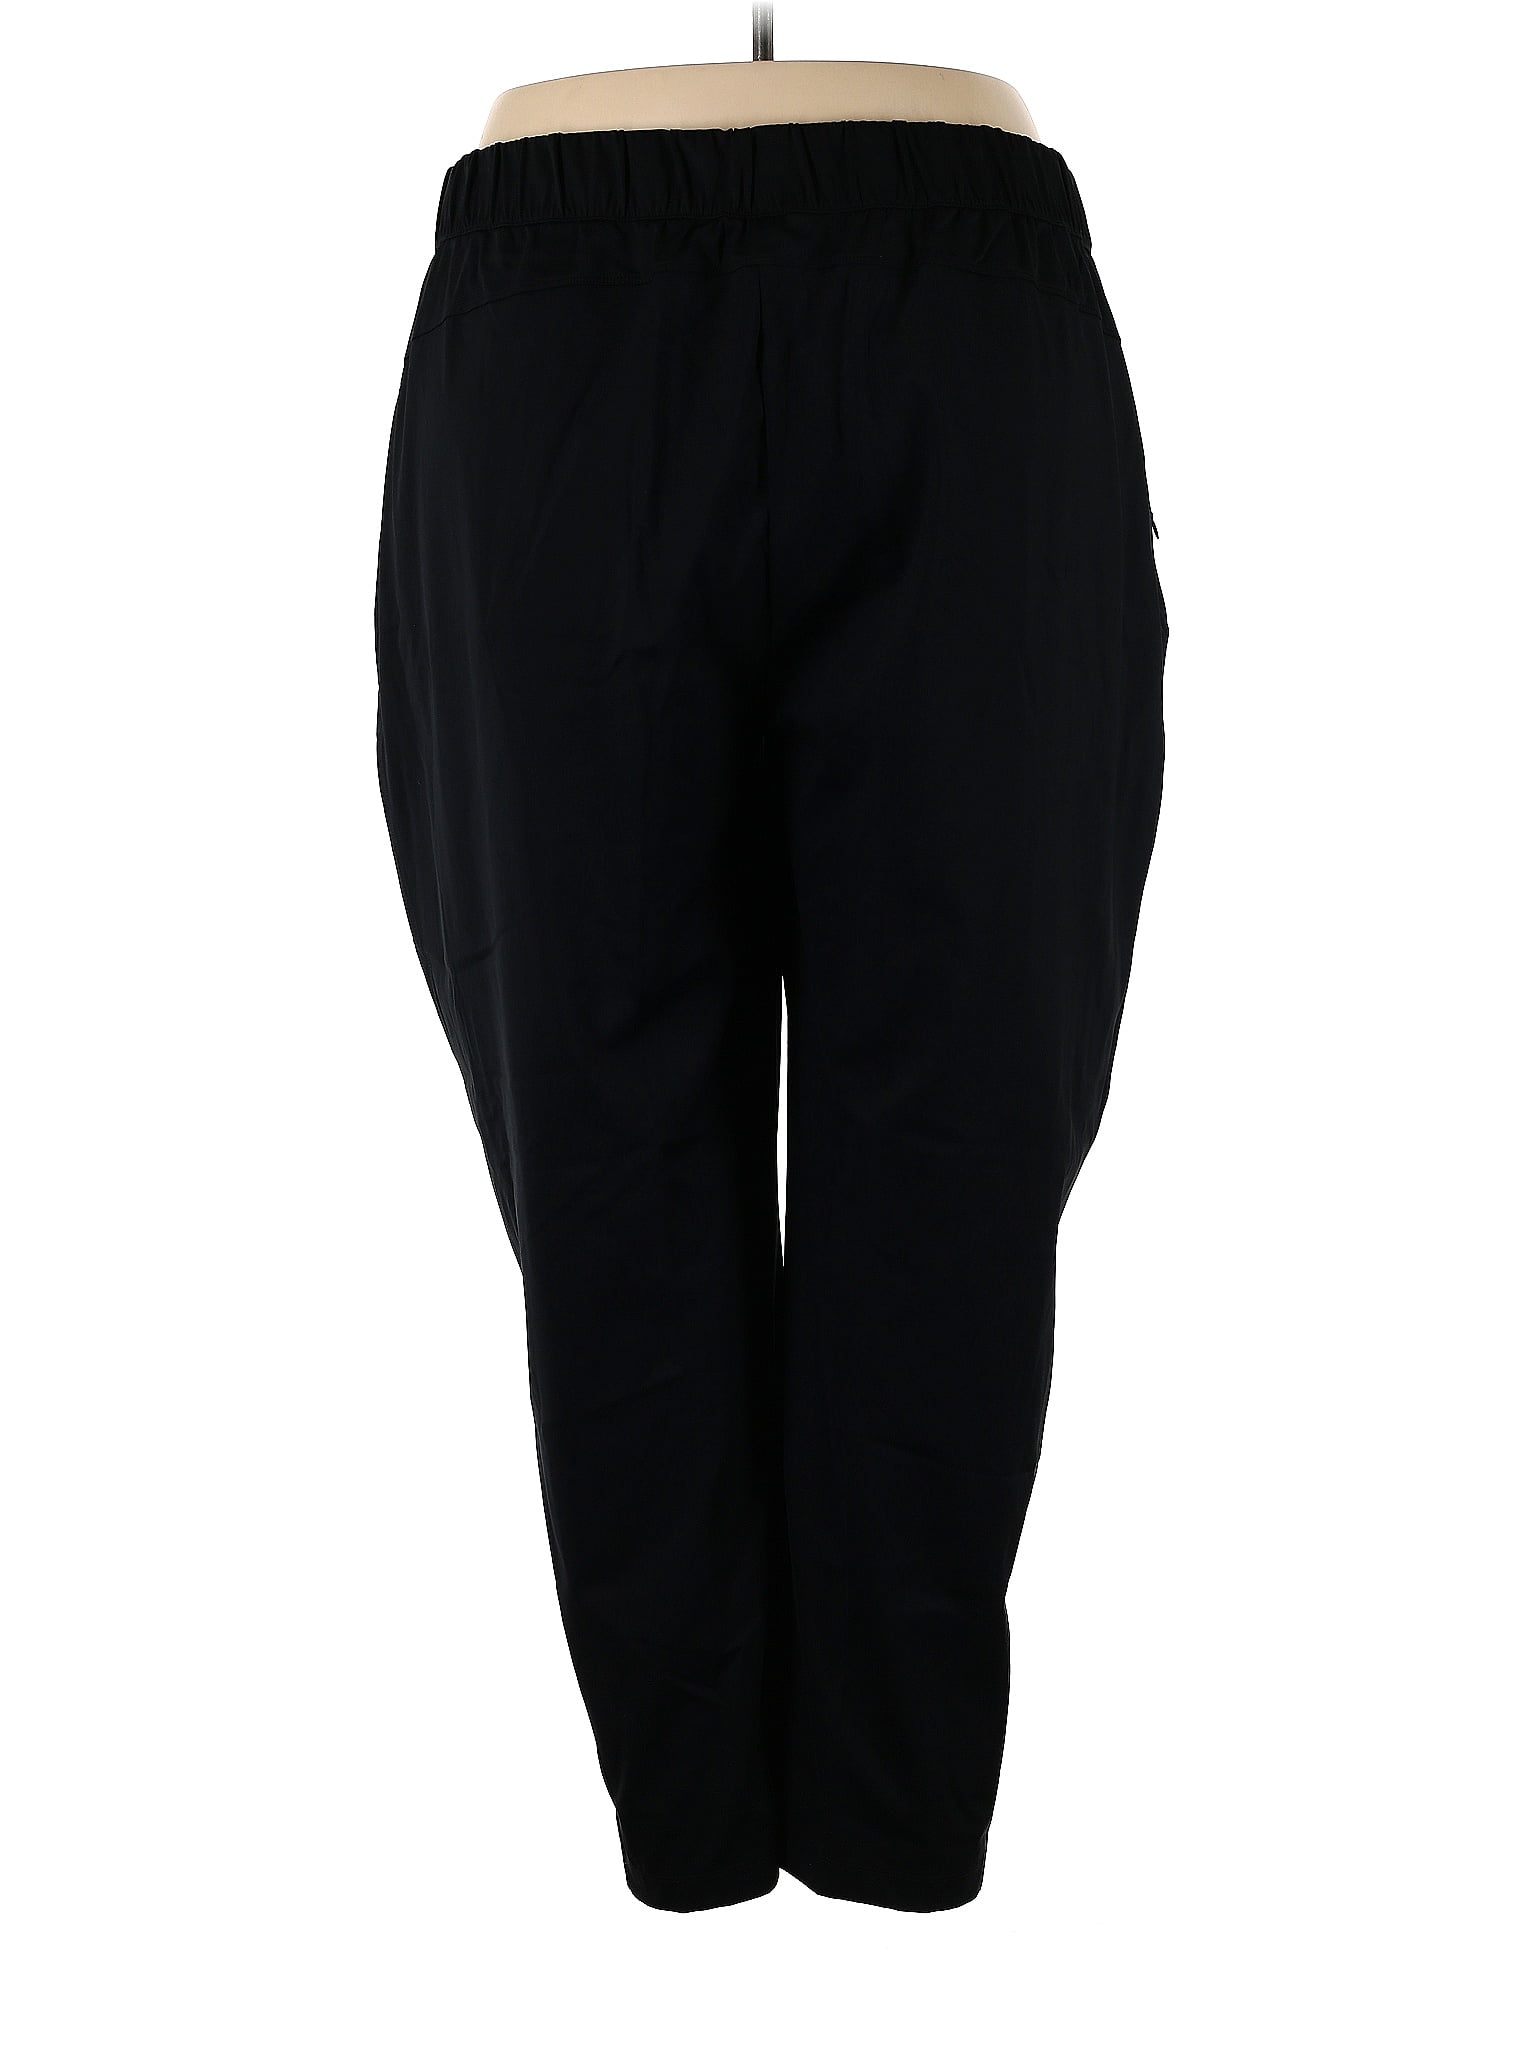 Zella Black Active Pants Size 2X (Plus) - 59% off